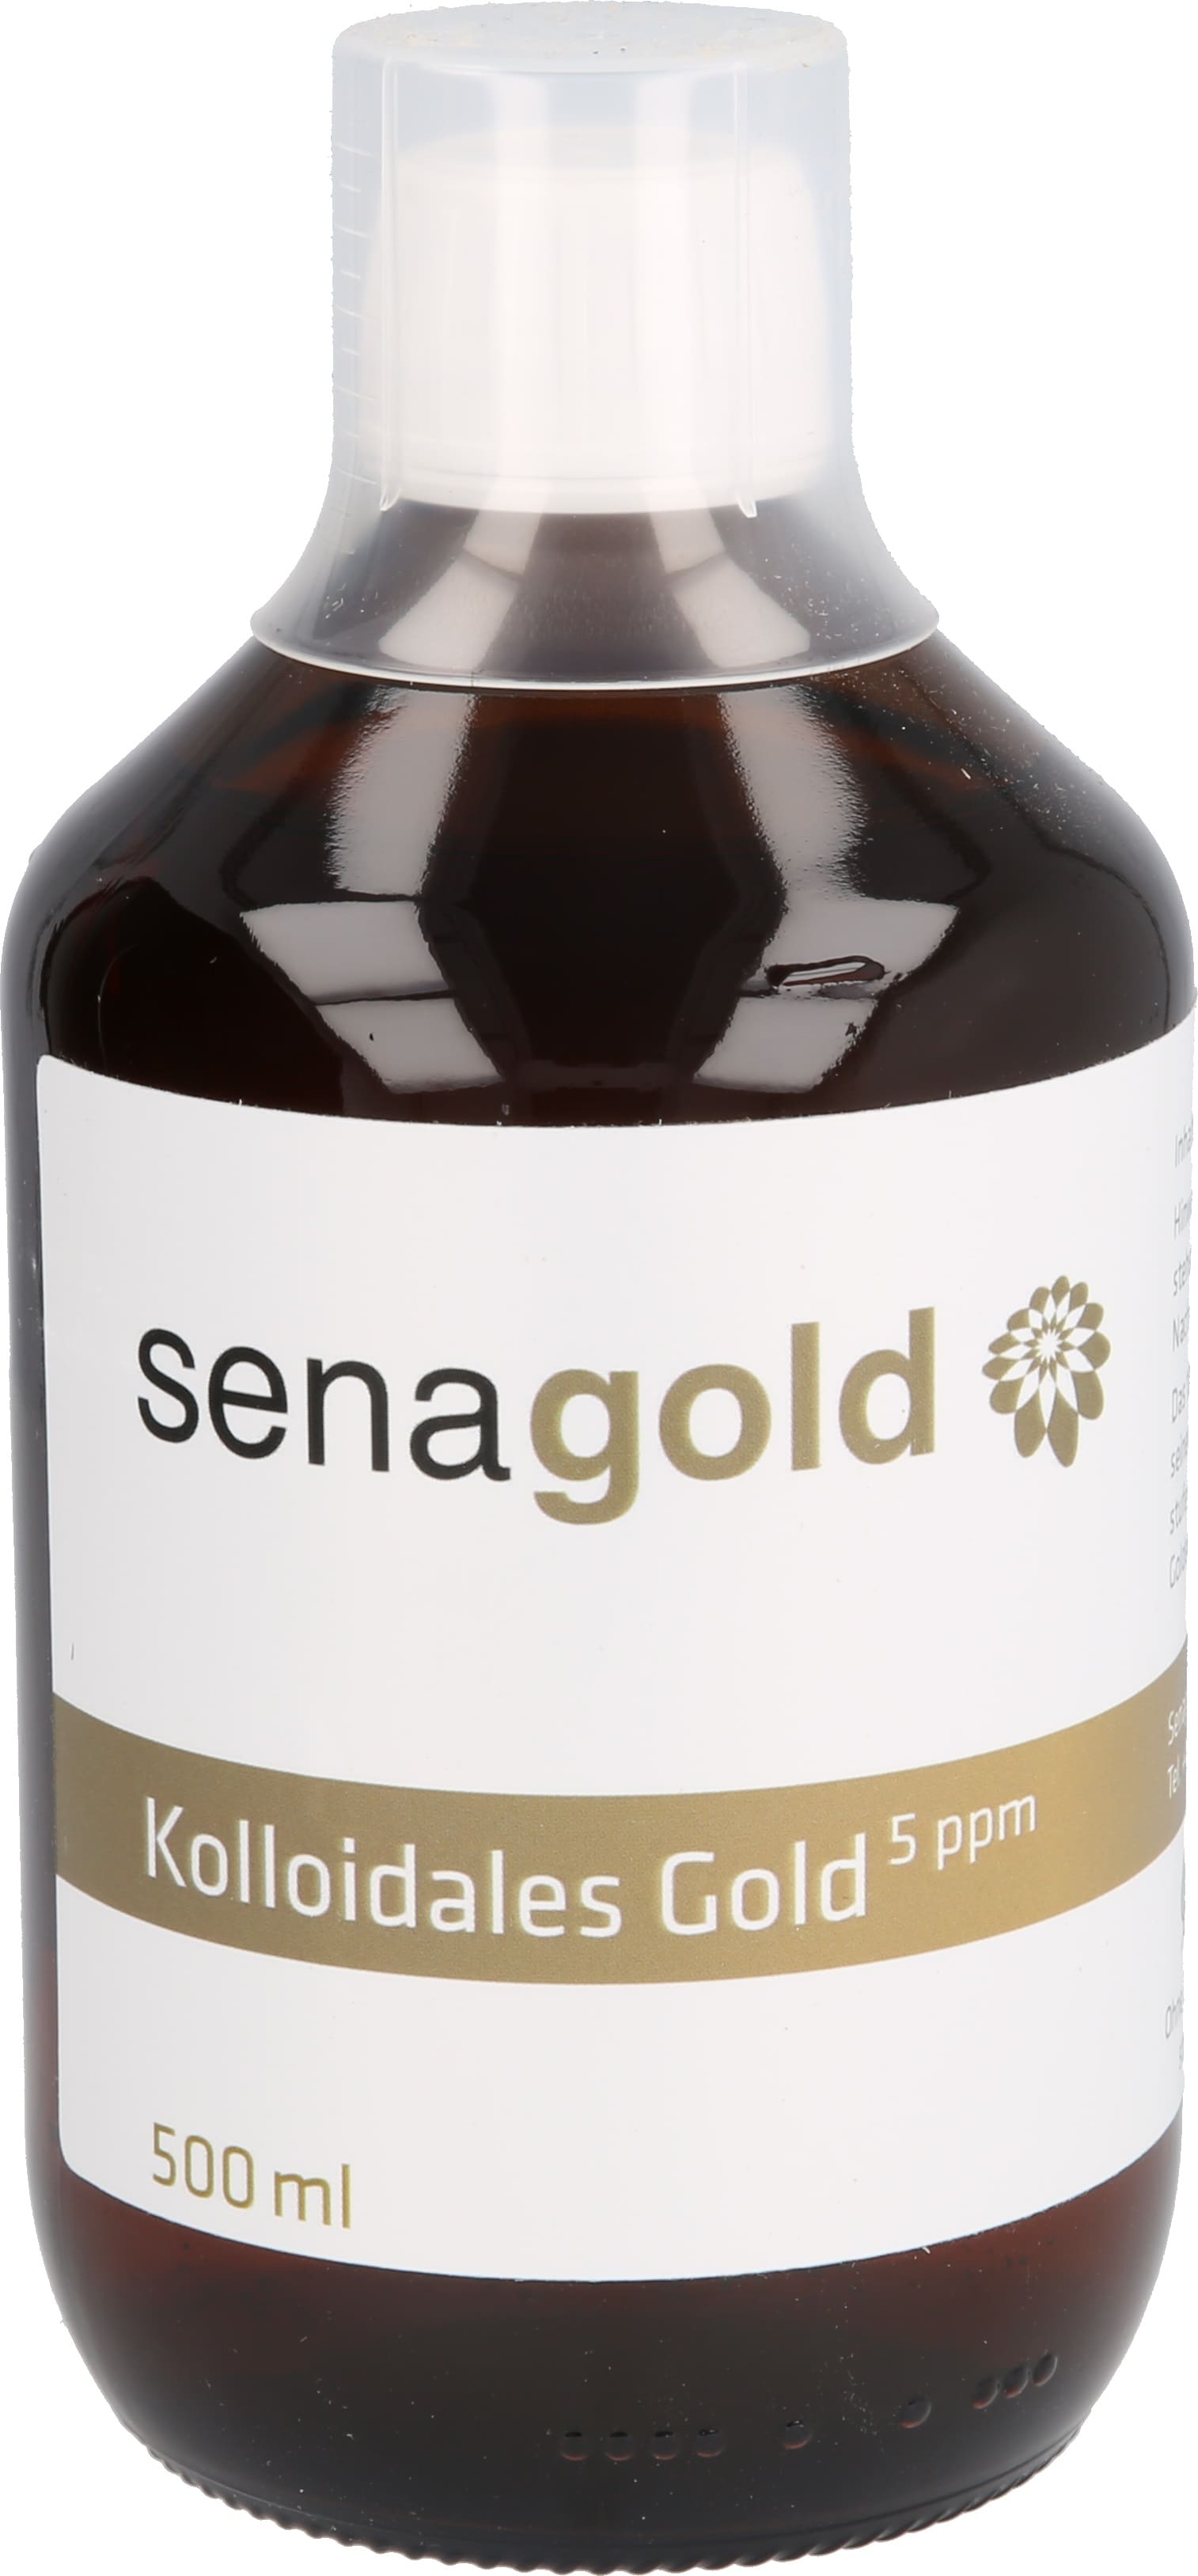 Kolloidales Gold 5 ppm (Goldwasser mit Goldkolloid-Anteil 5 ppm), 500 ml